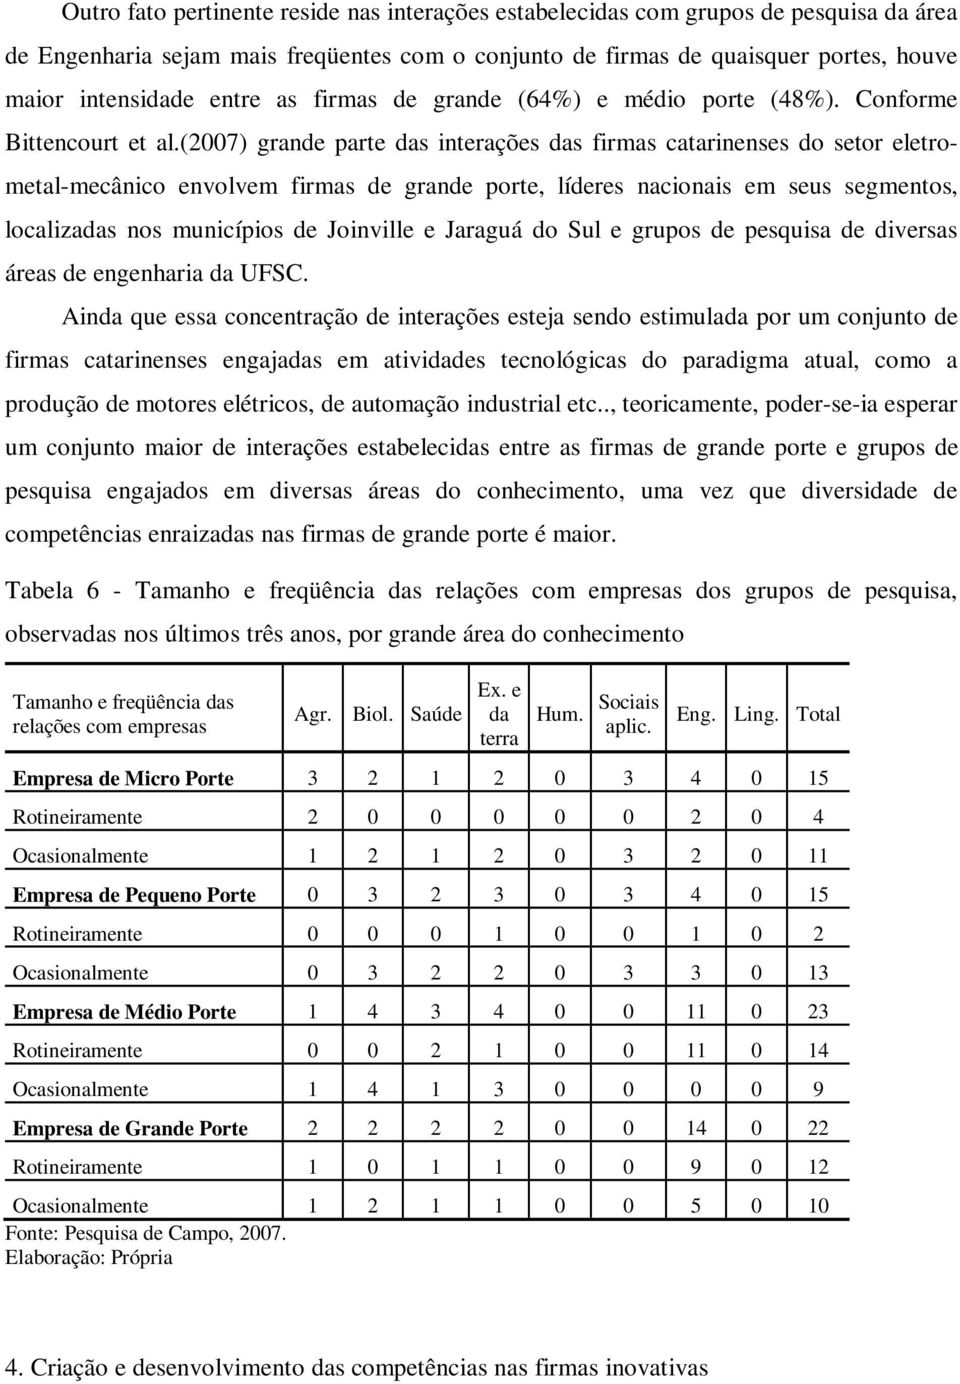 (2007) grande parte das interações das firmas catarinenses do setor eletrometal-mecânico envolvem firmas de grande porte, líderes nacionais em seus segmentos, localizadas nos municípios de Joinville